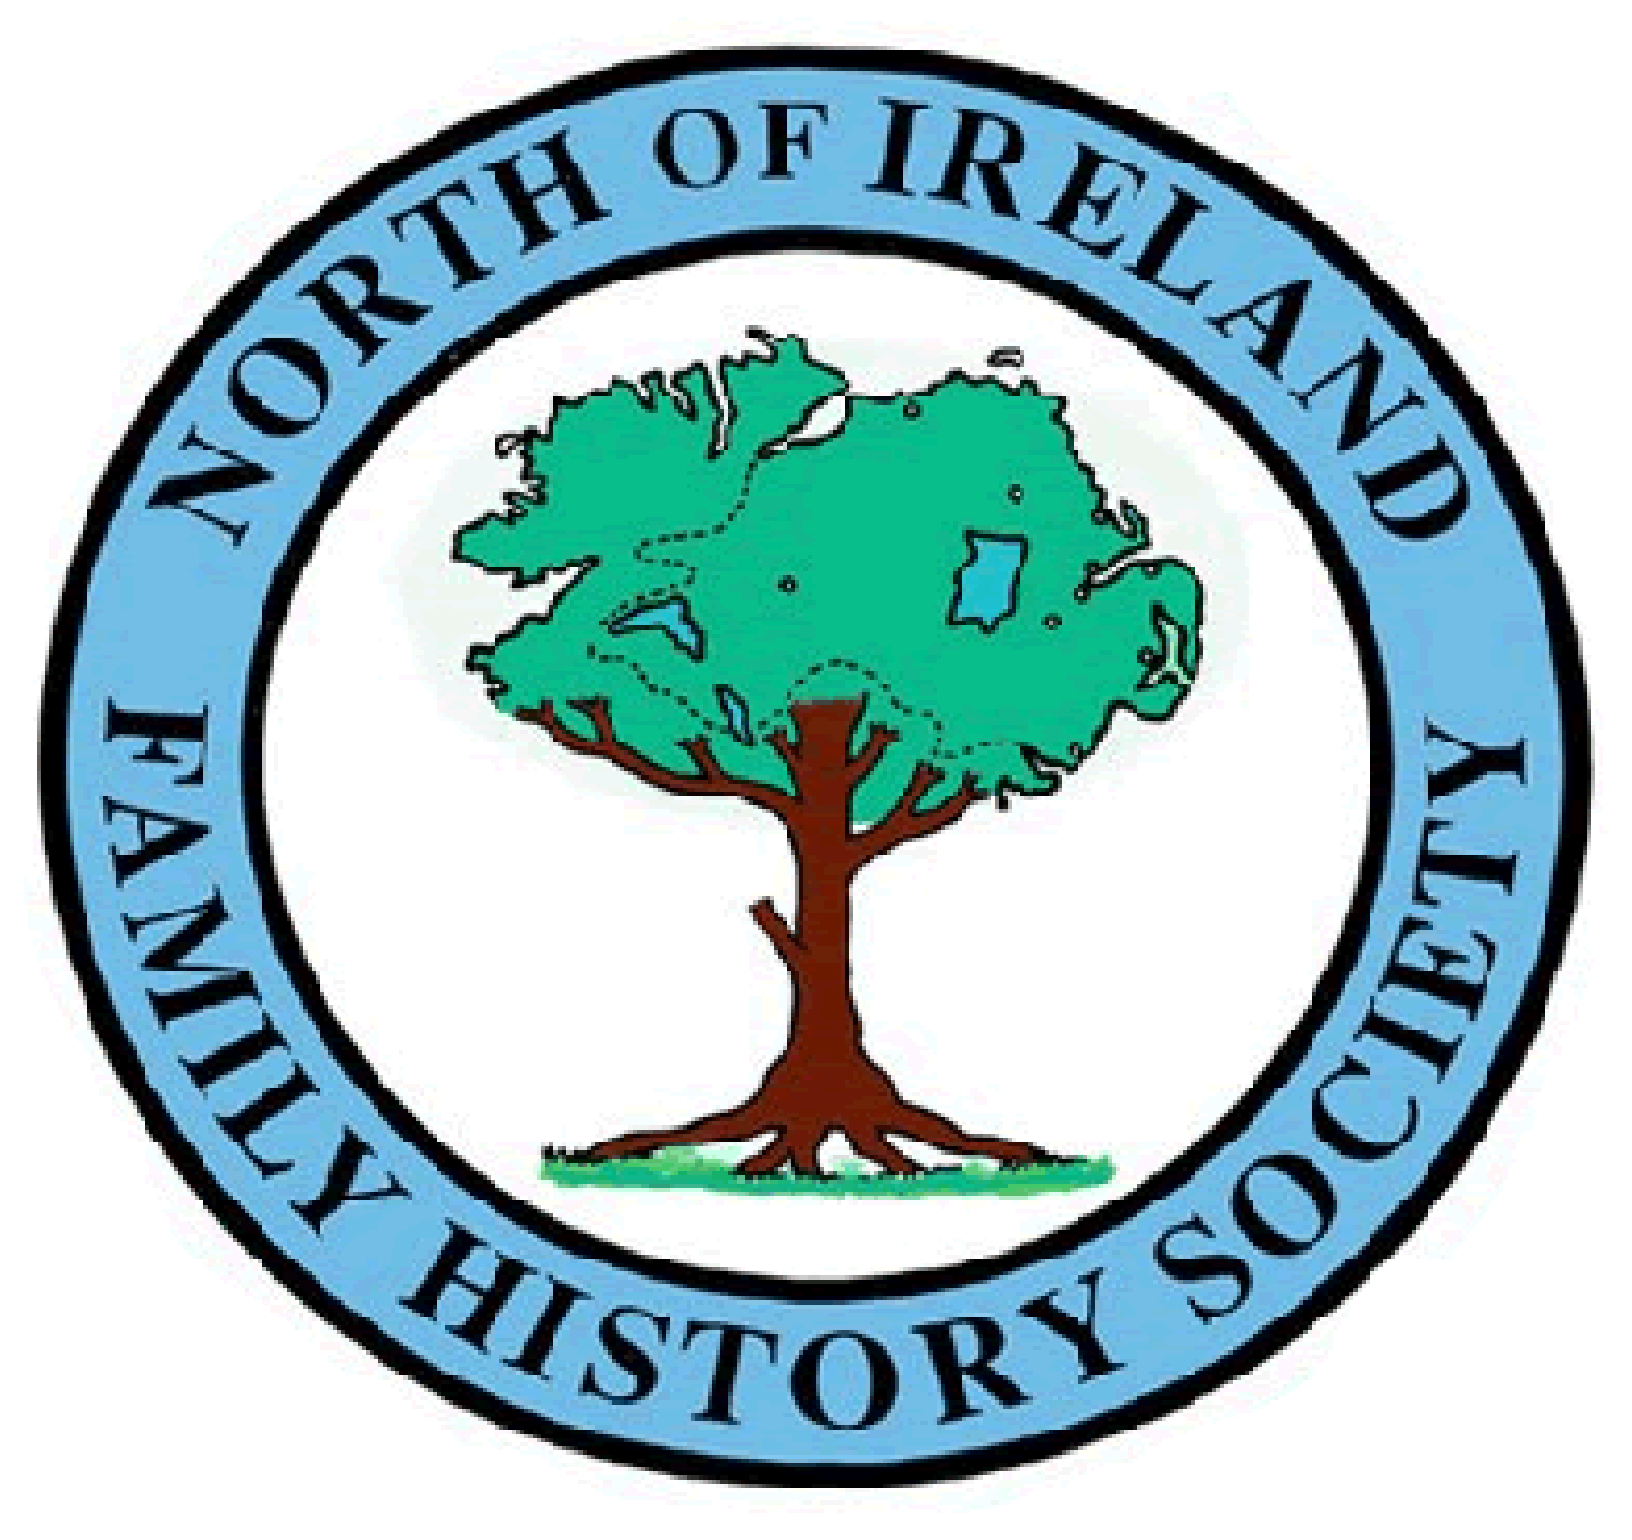 North of Ireland Family History Society